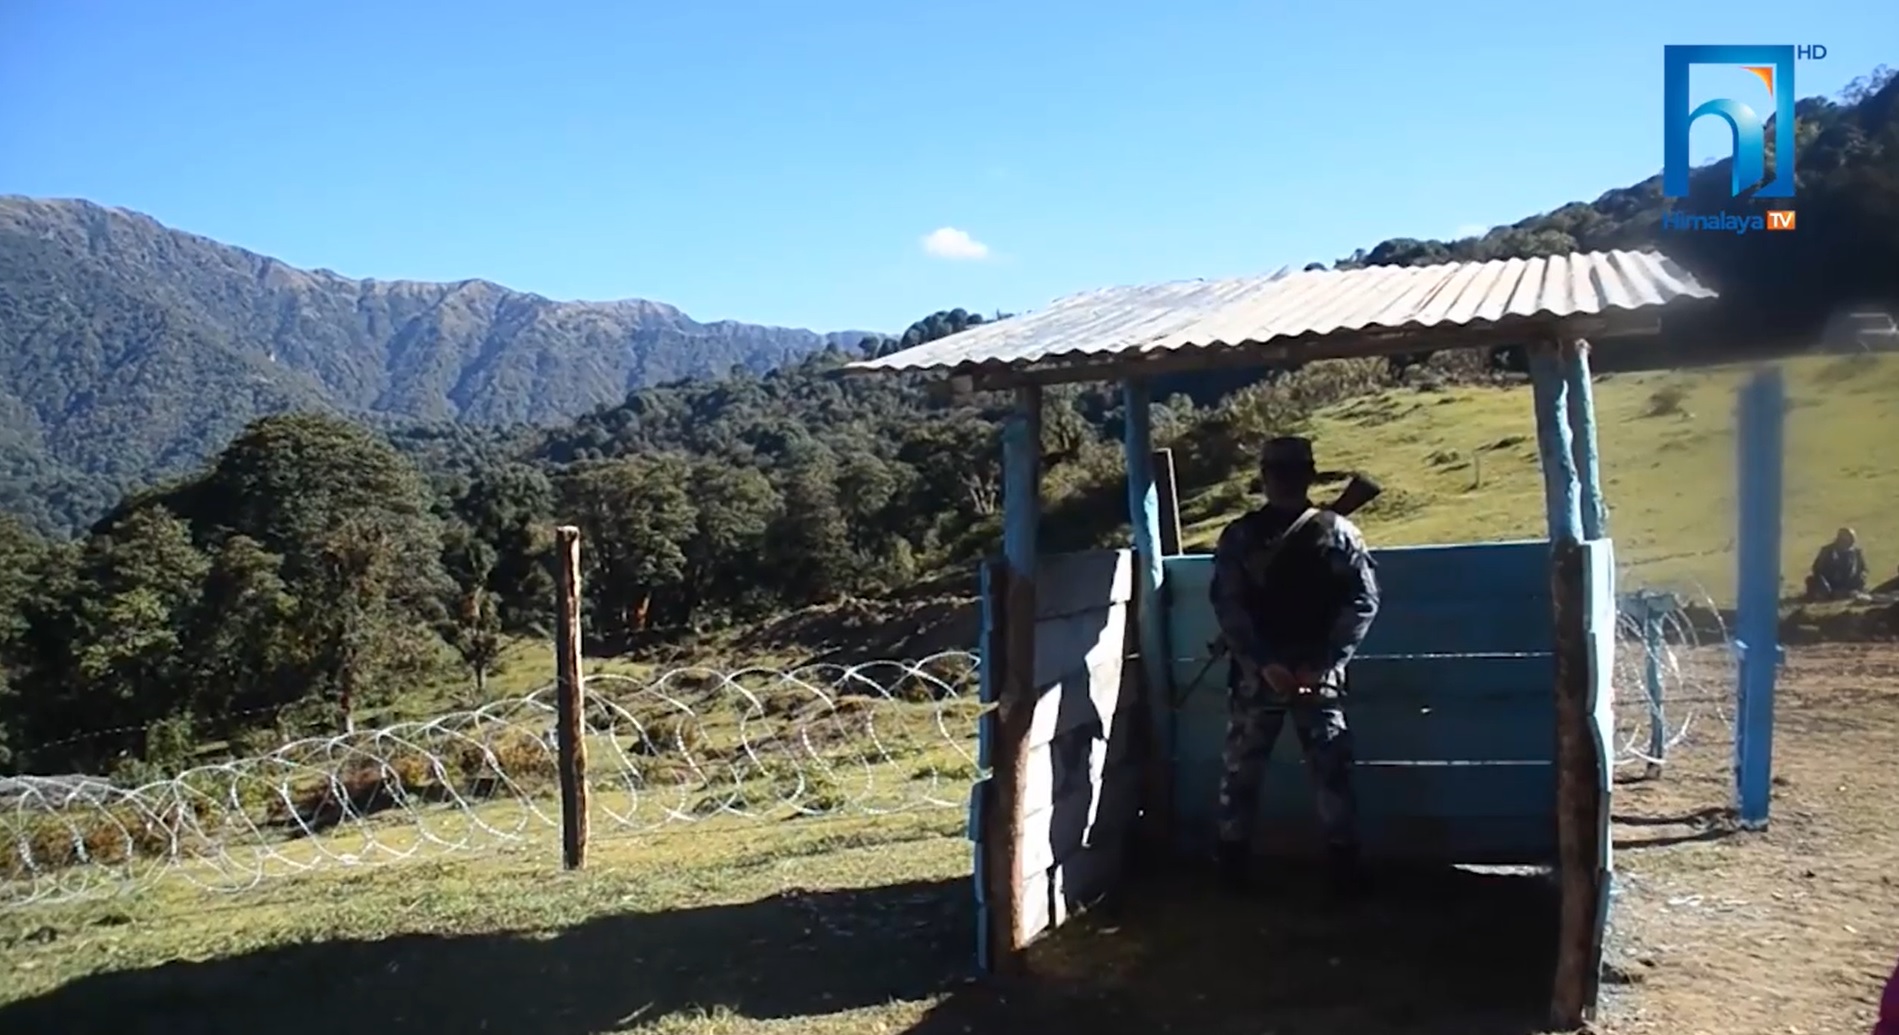 सन्दुकपुरदेखि तिम्बुपोखरीसम्मको सीमा क्षेत्रमा सशस्त्र प्रहरीको बीओपी स्थापना (भिडियो रिपोर्टसहित)